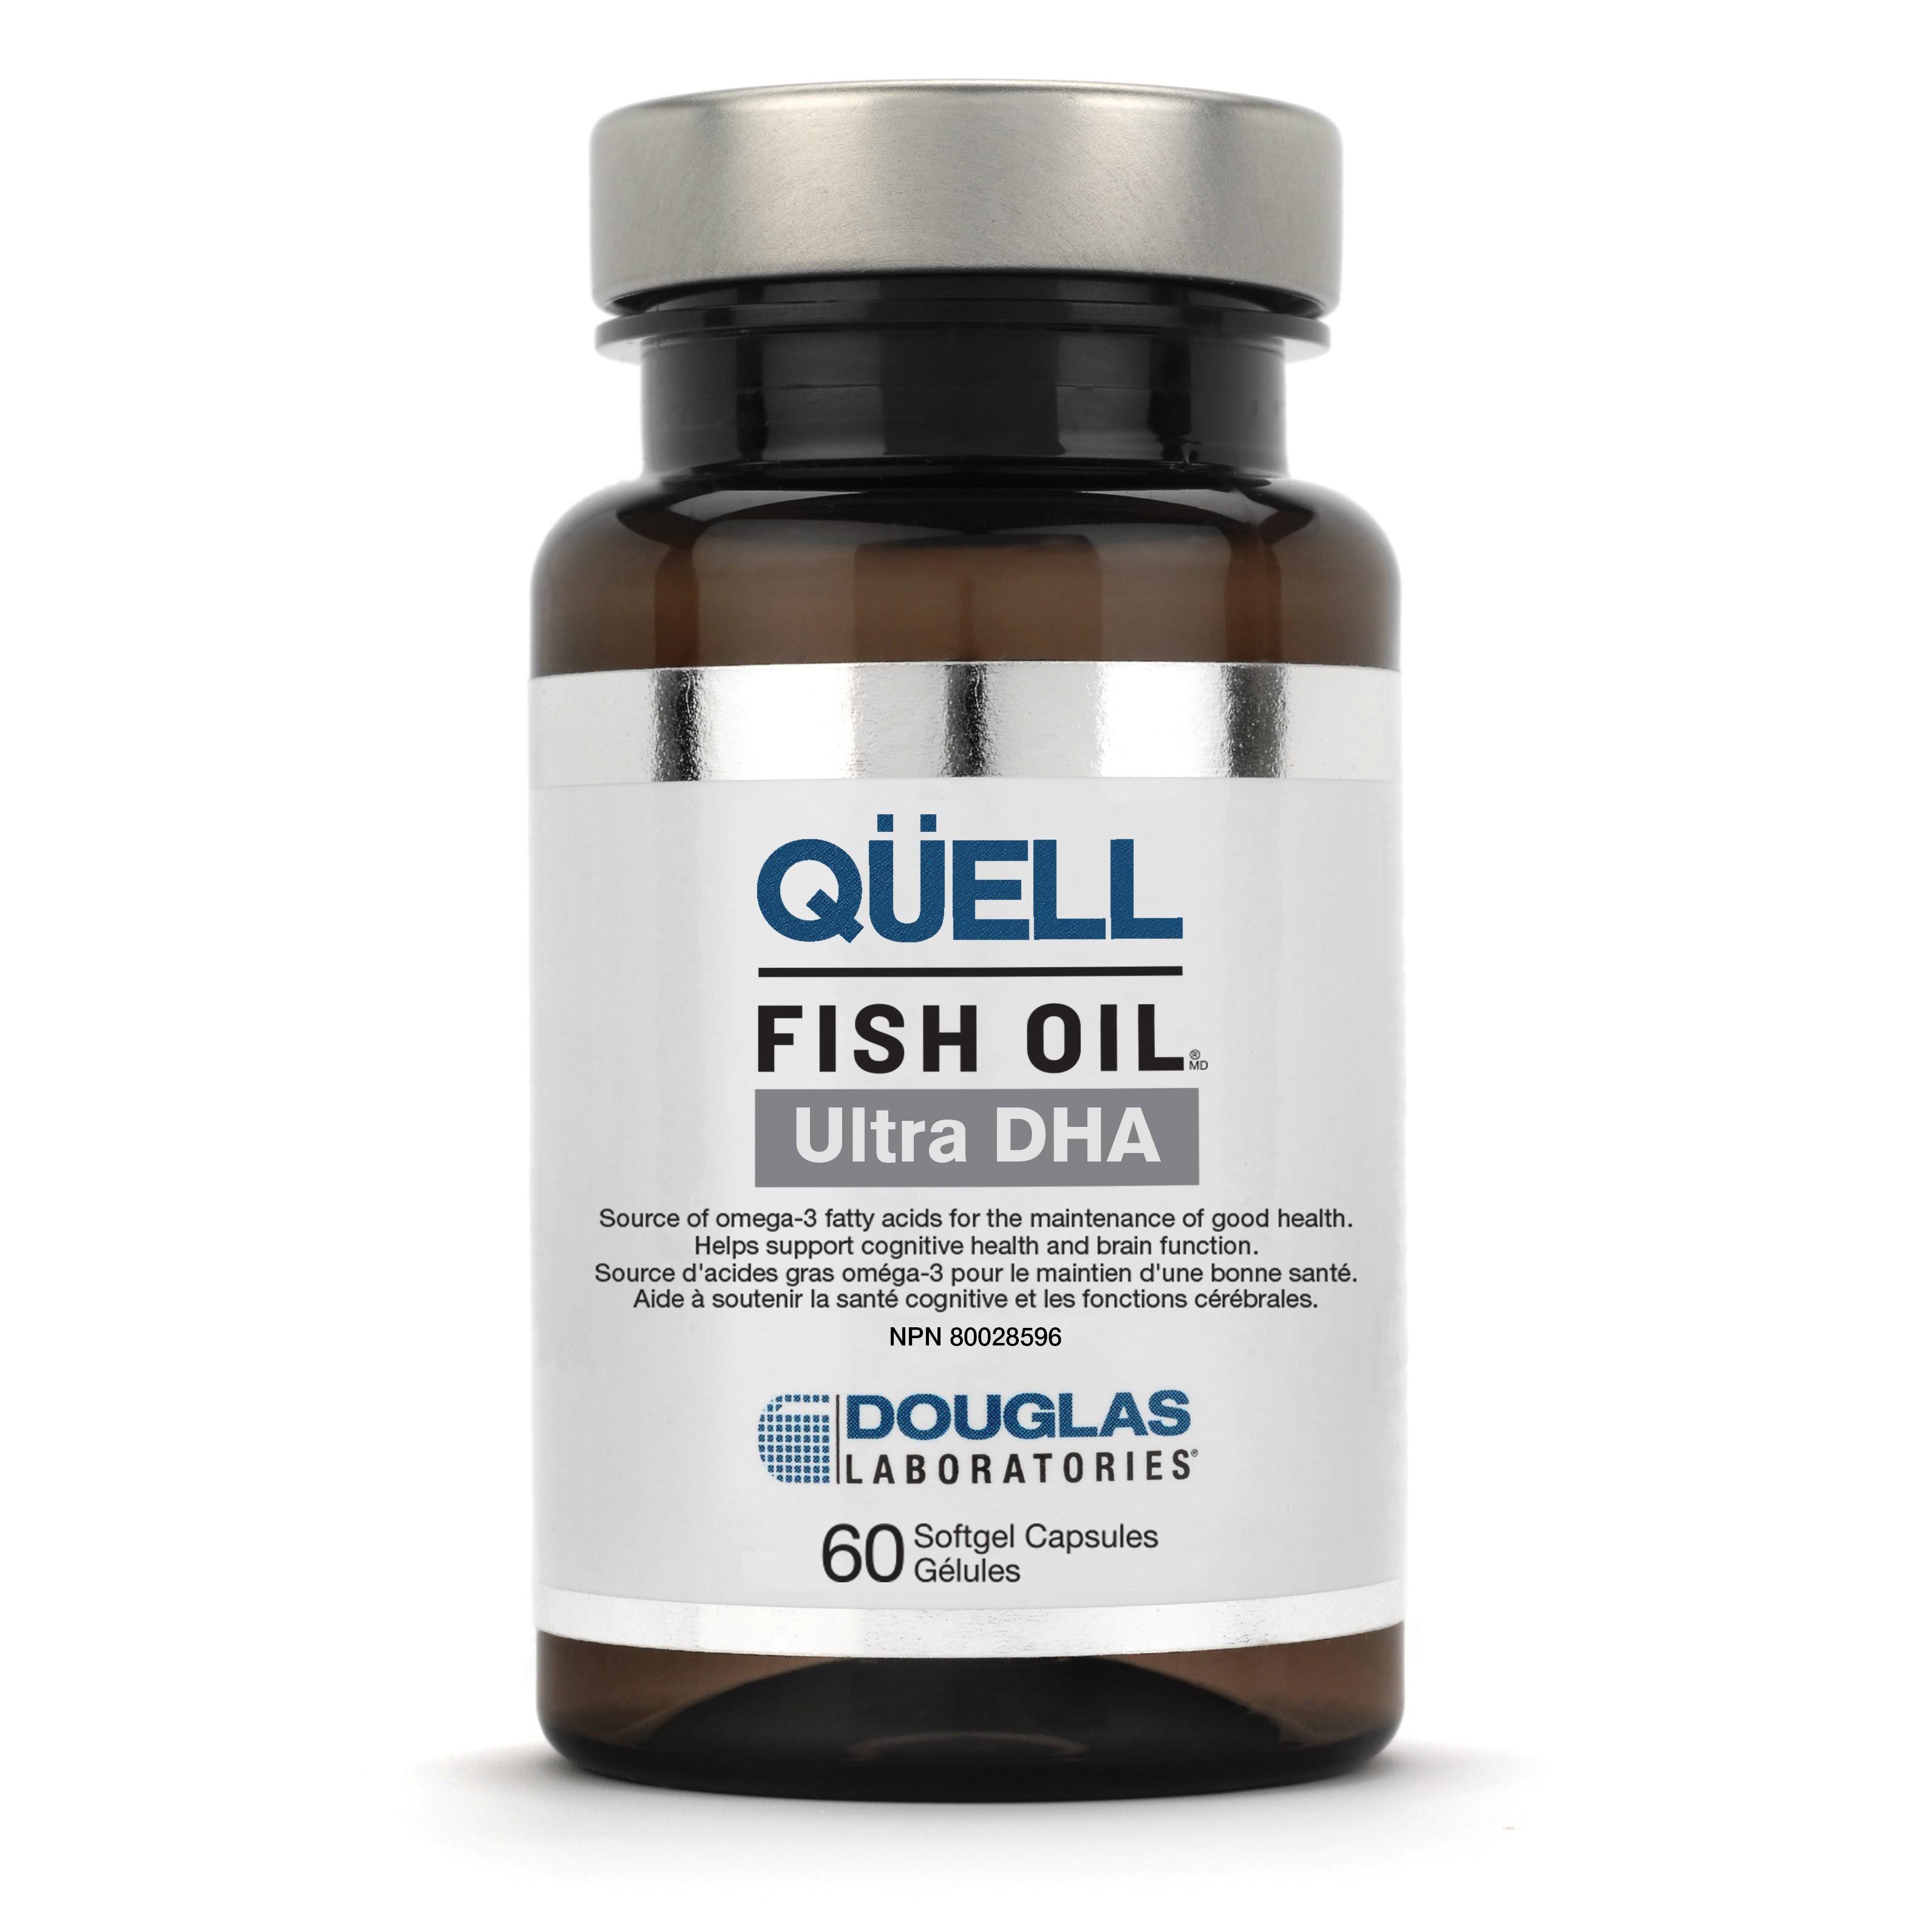 Douglas Laboratories Quell Fish Oil Supplement - 60 Softgels